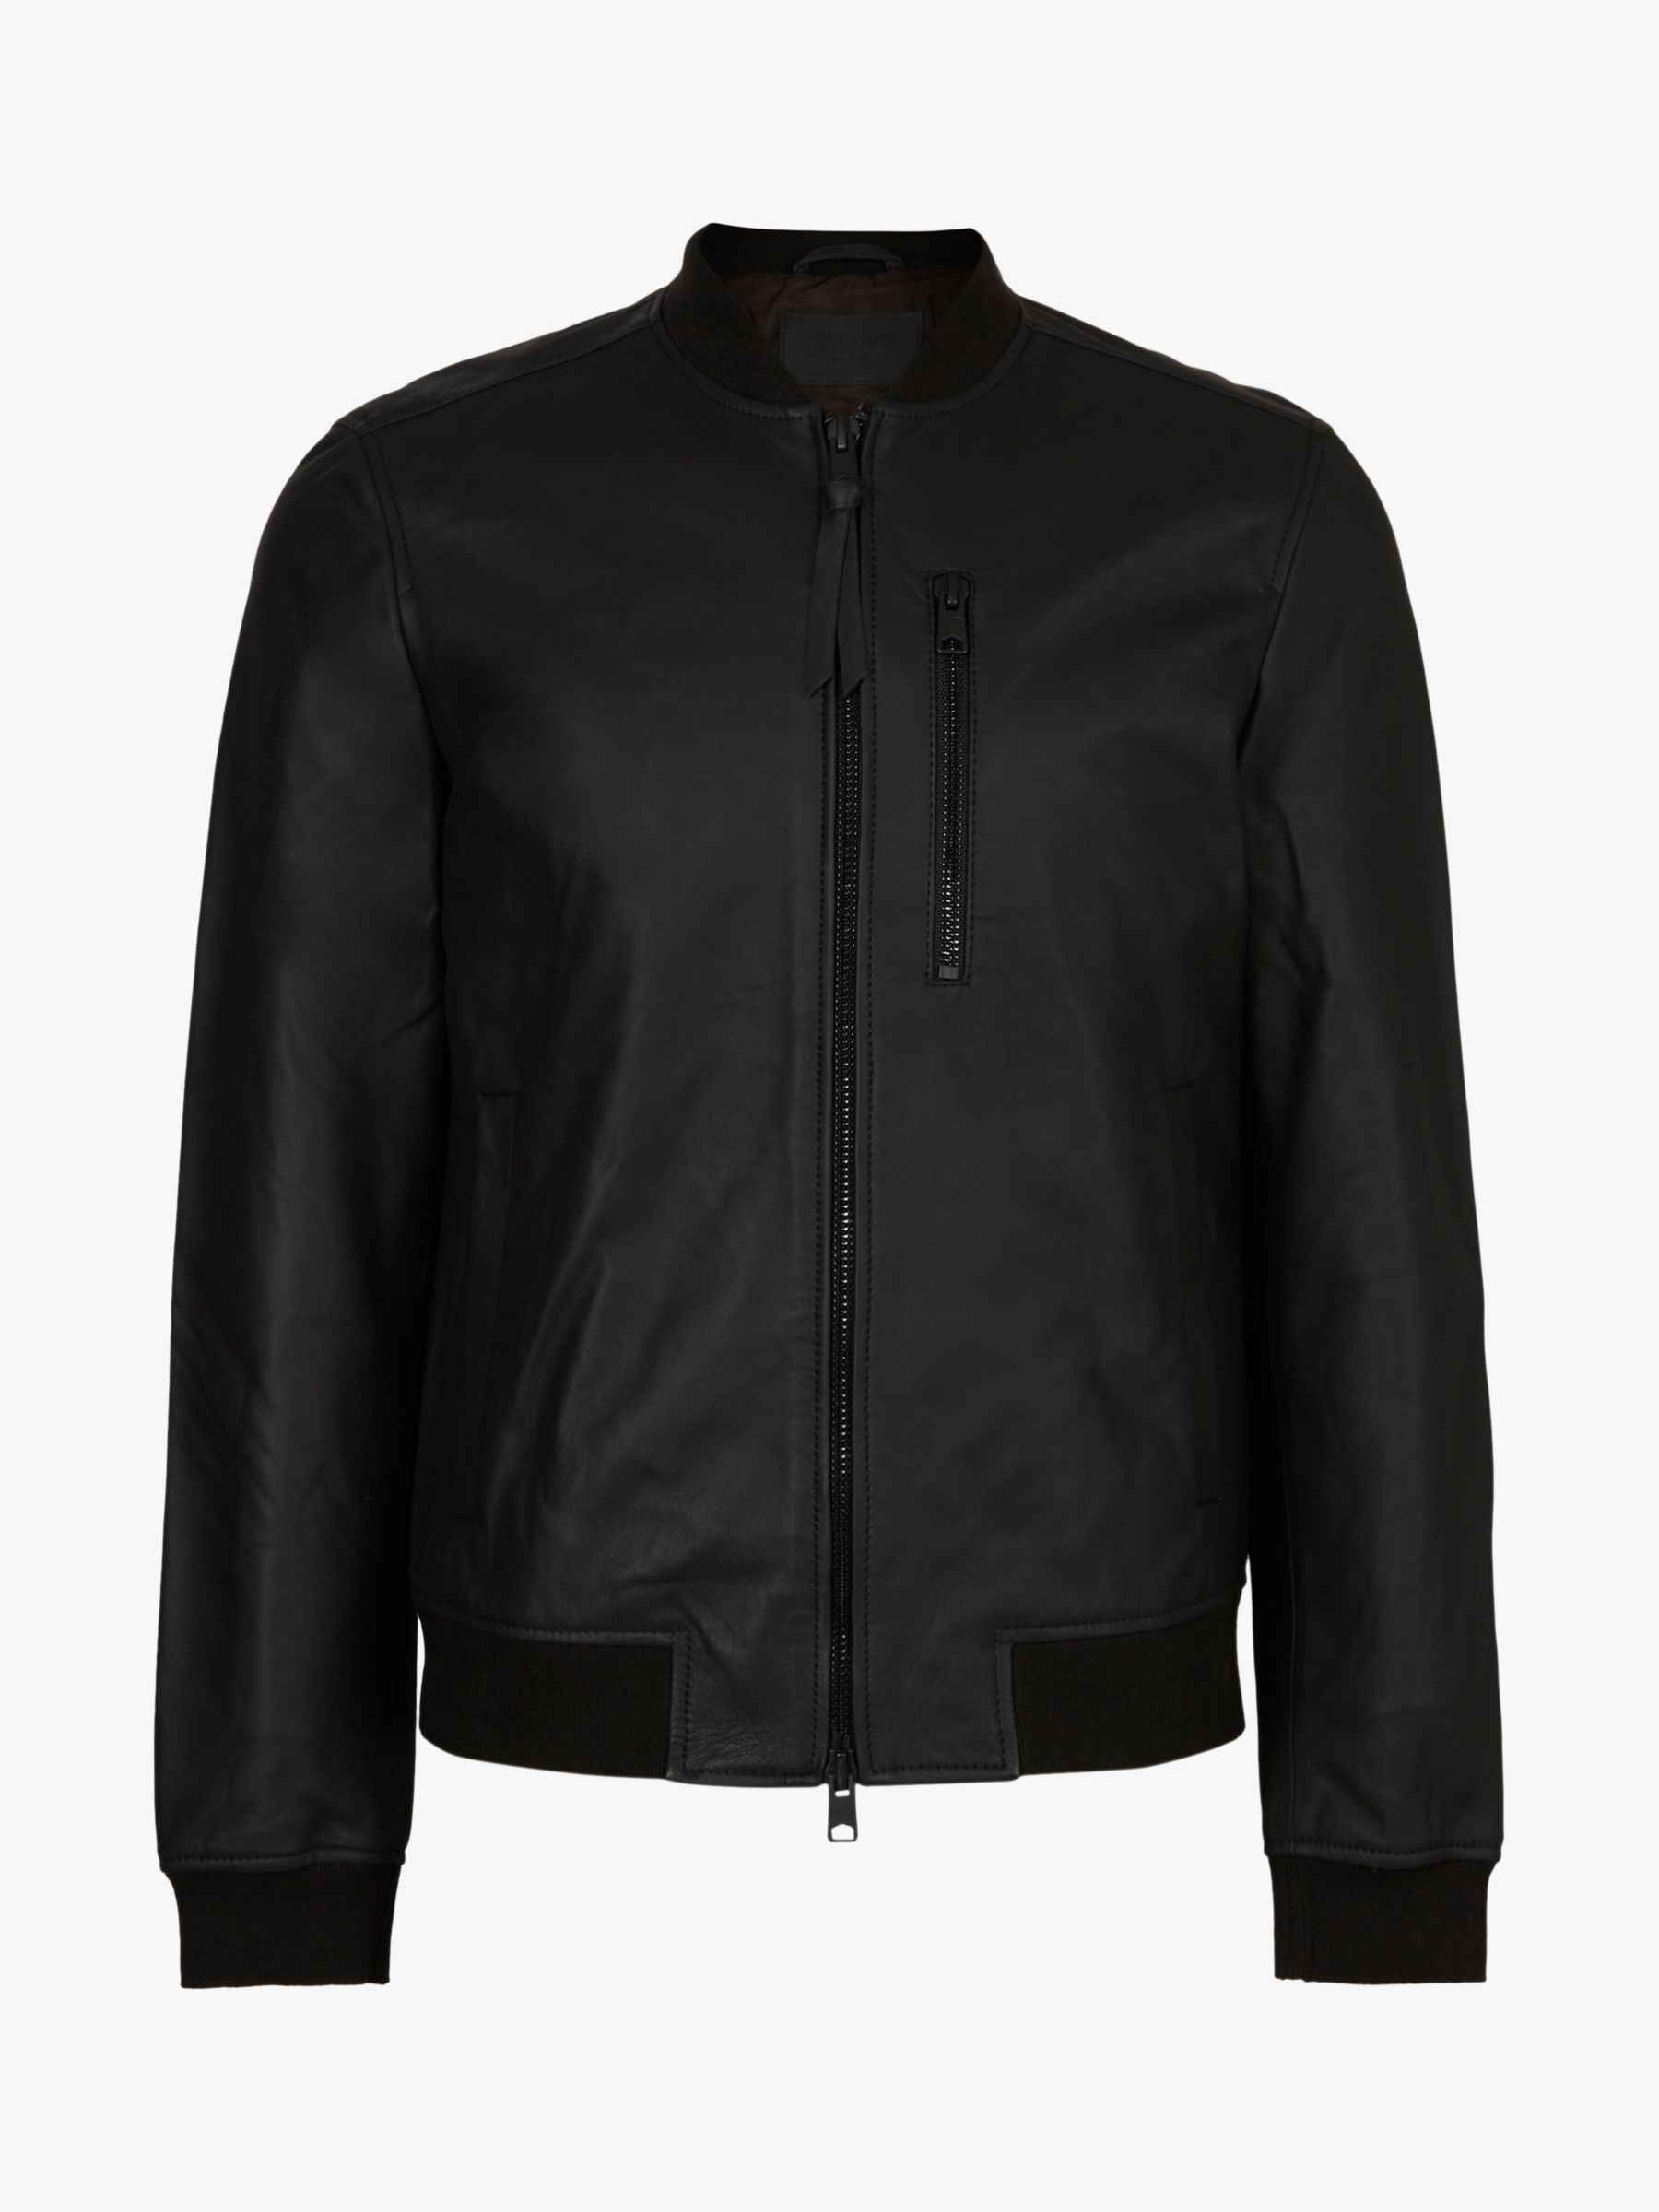 AllSaints Ivor Leather Bomber Jacket, Black at John Lewis & Partners